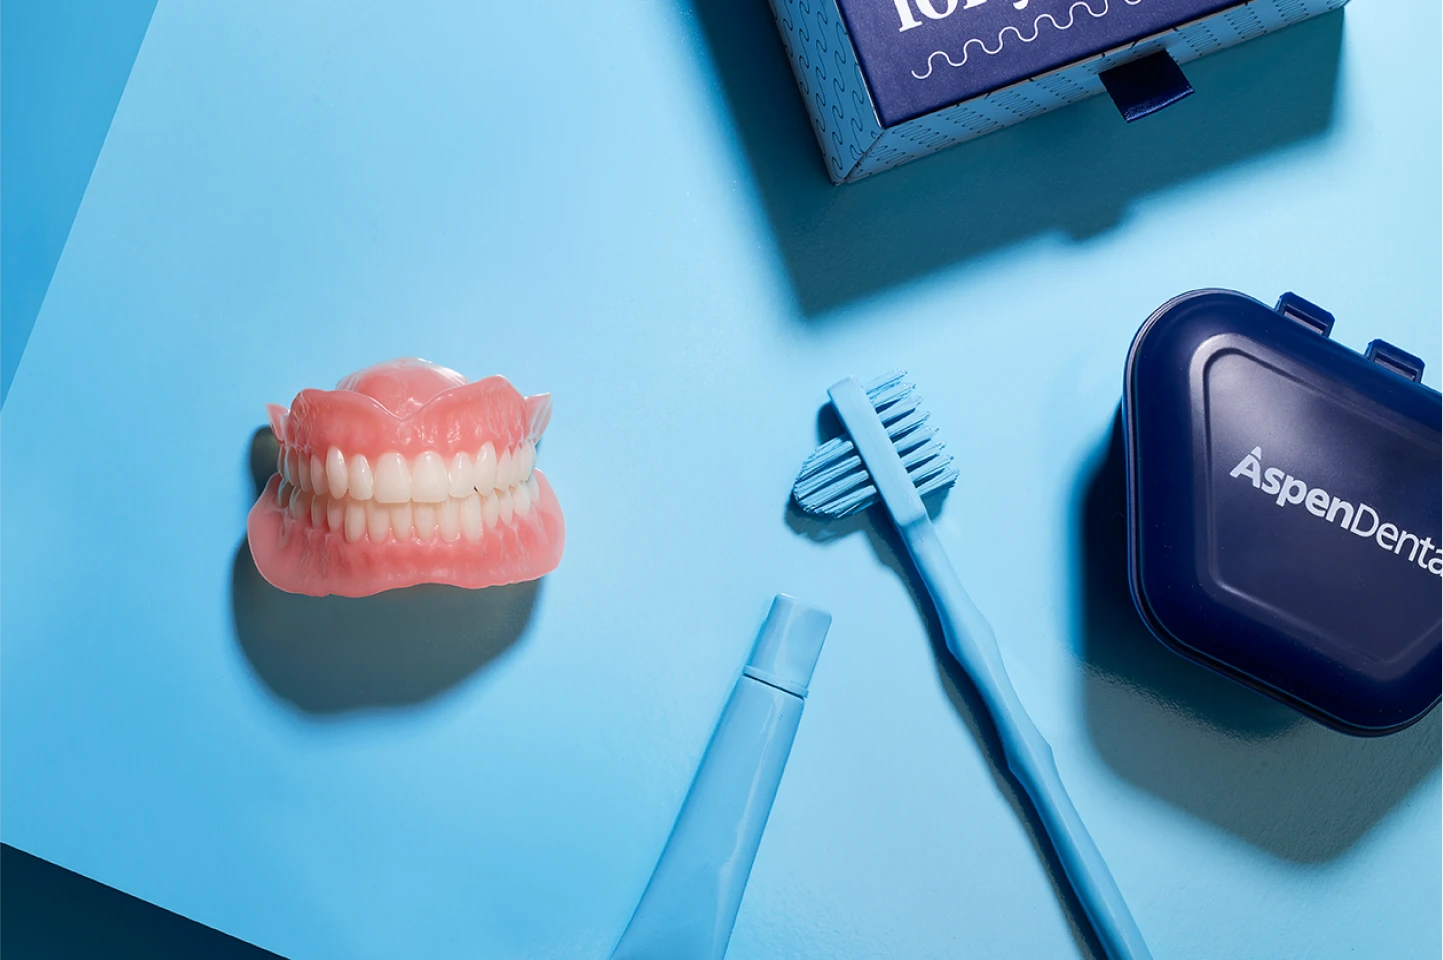 Denture kit image from Aspen Dental.